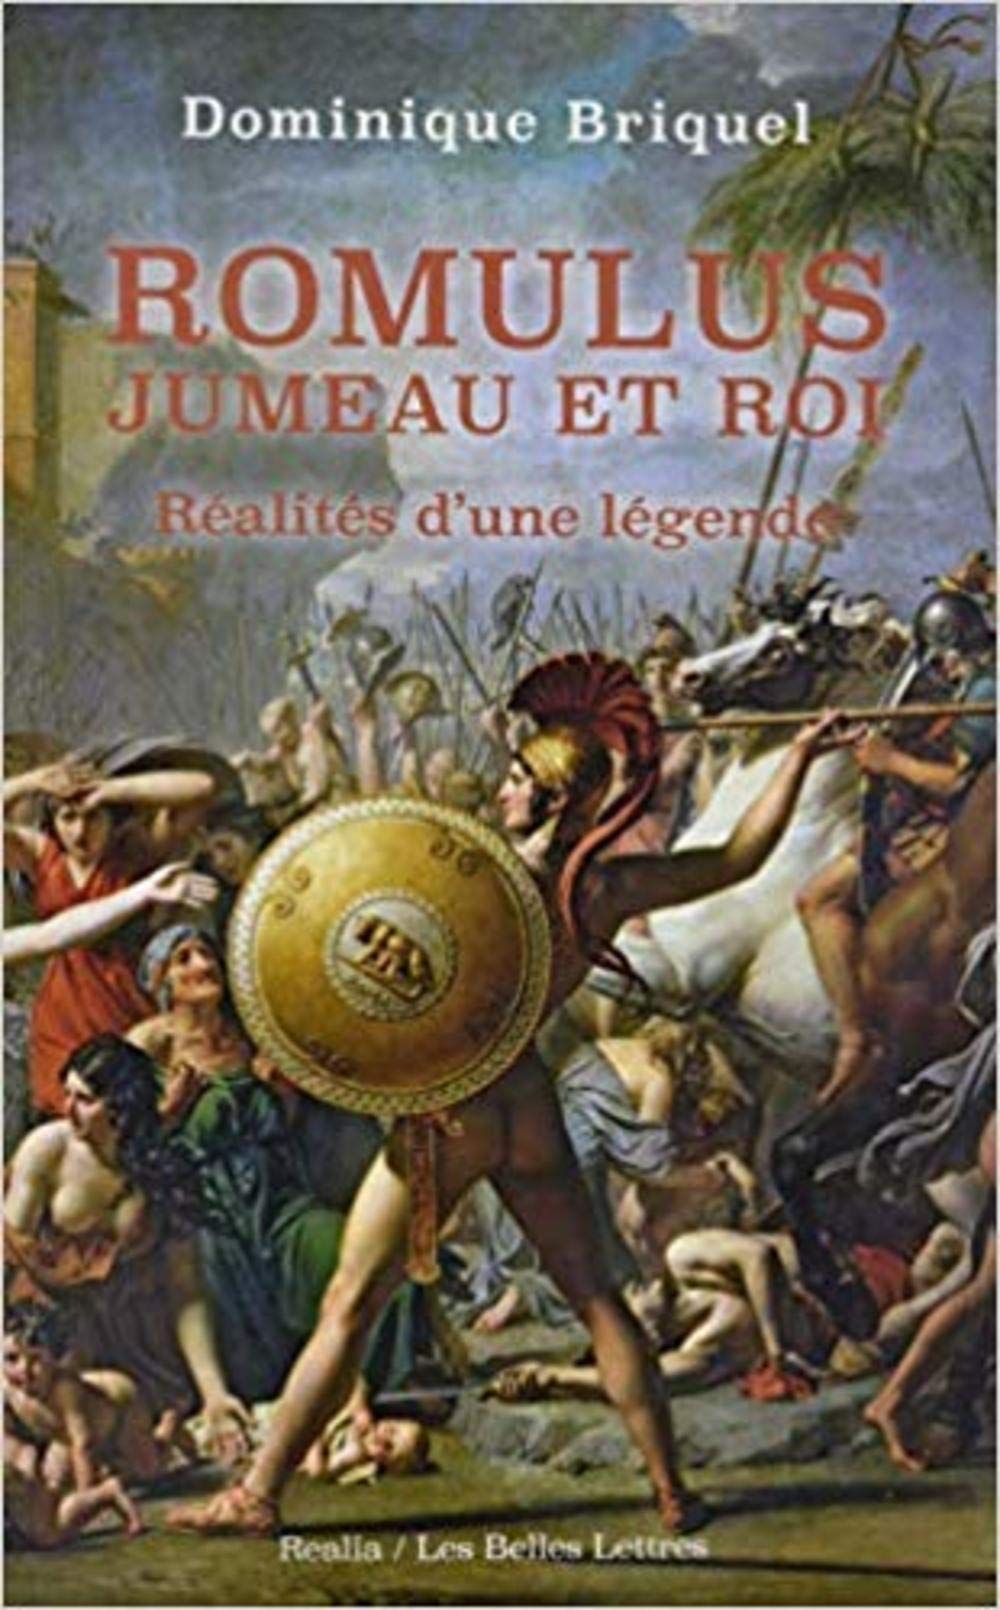 Romulus, jumeau et roi. Réalités d'une légende, 2018, 480 p.